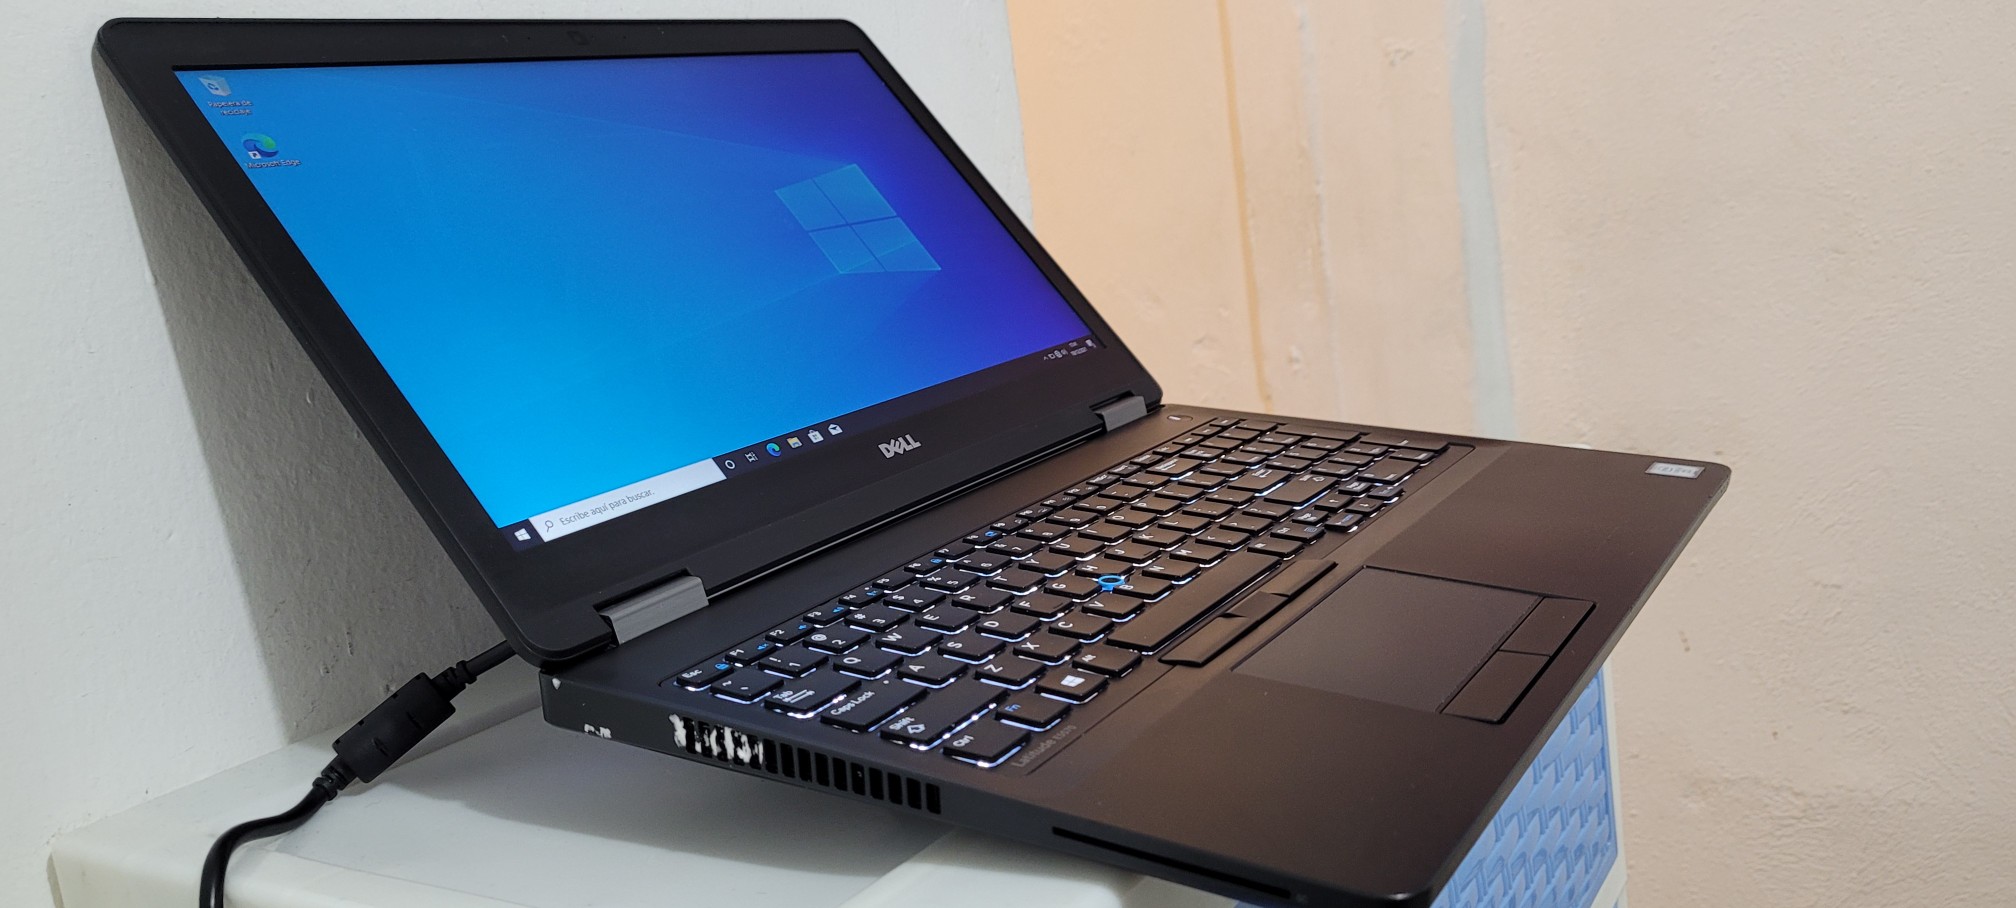 computadoras y laptops - Dell 5550 17 Pulg Core i7 Ram 12gb Disco Solido Video 6gb 1